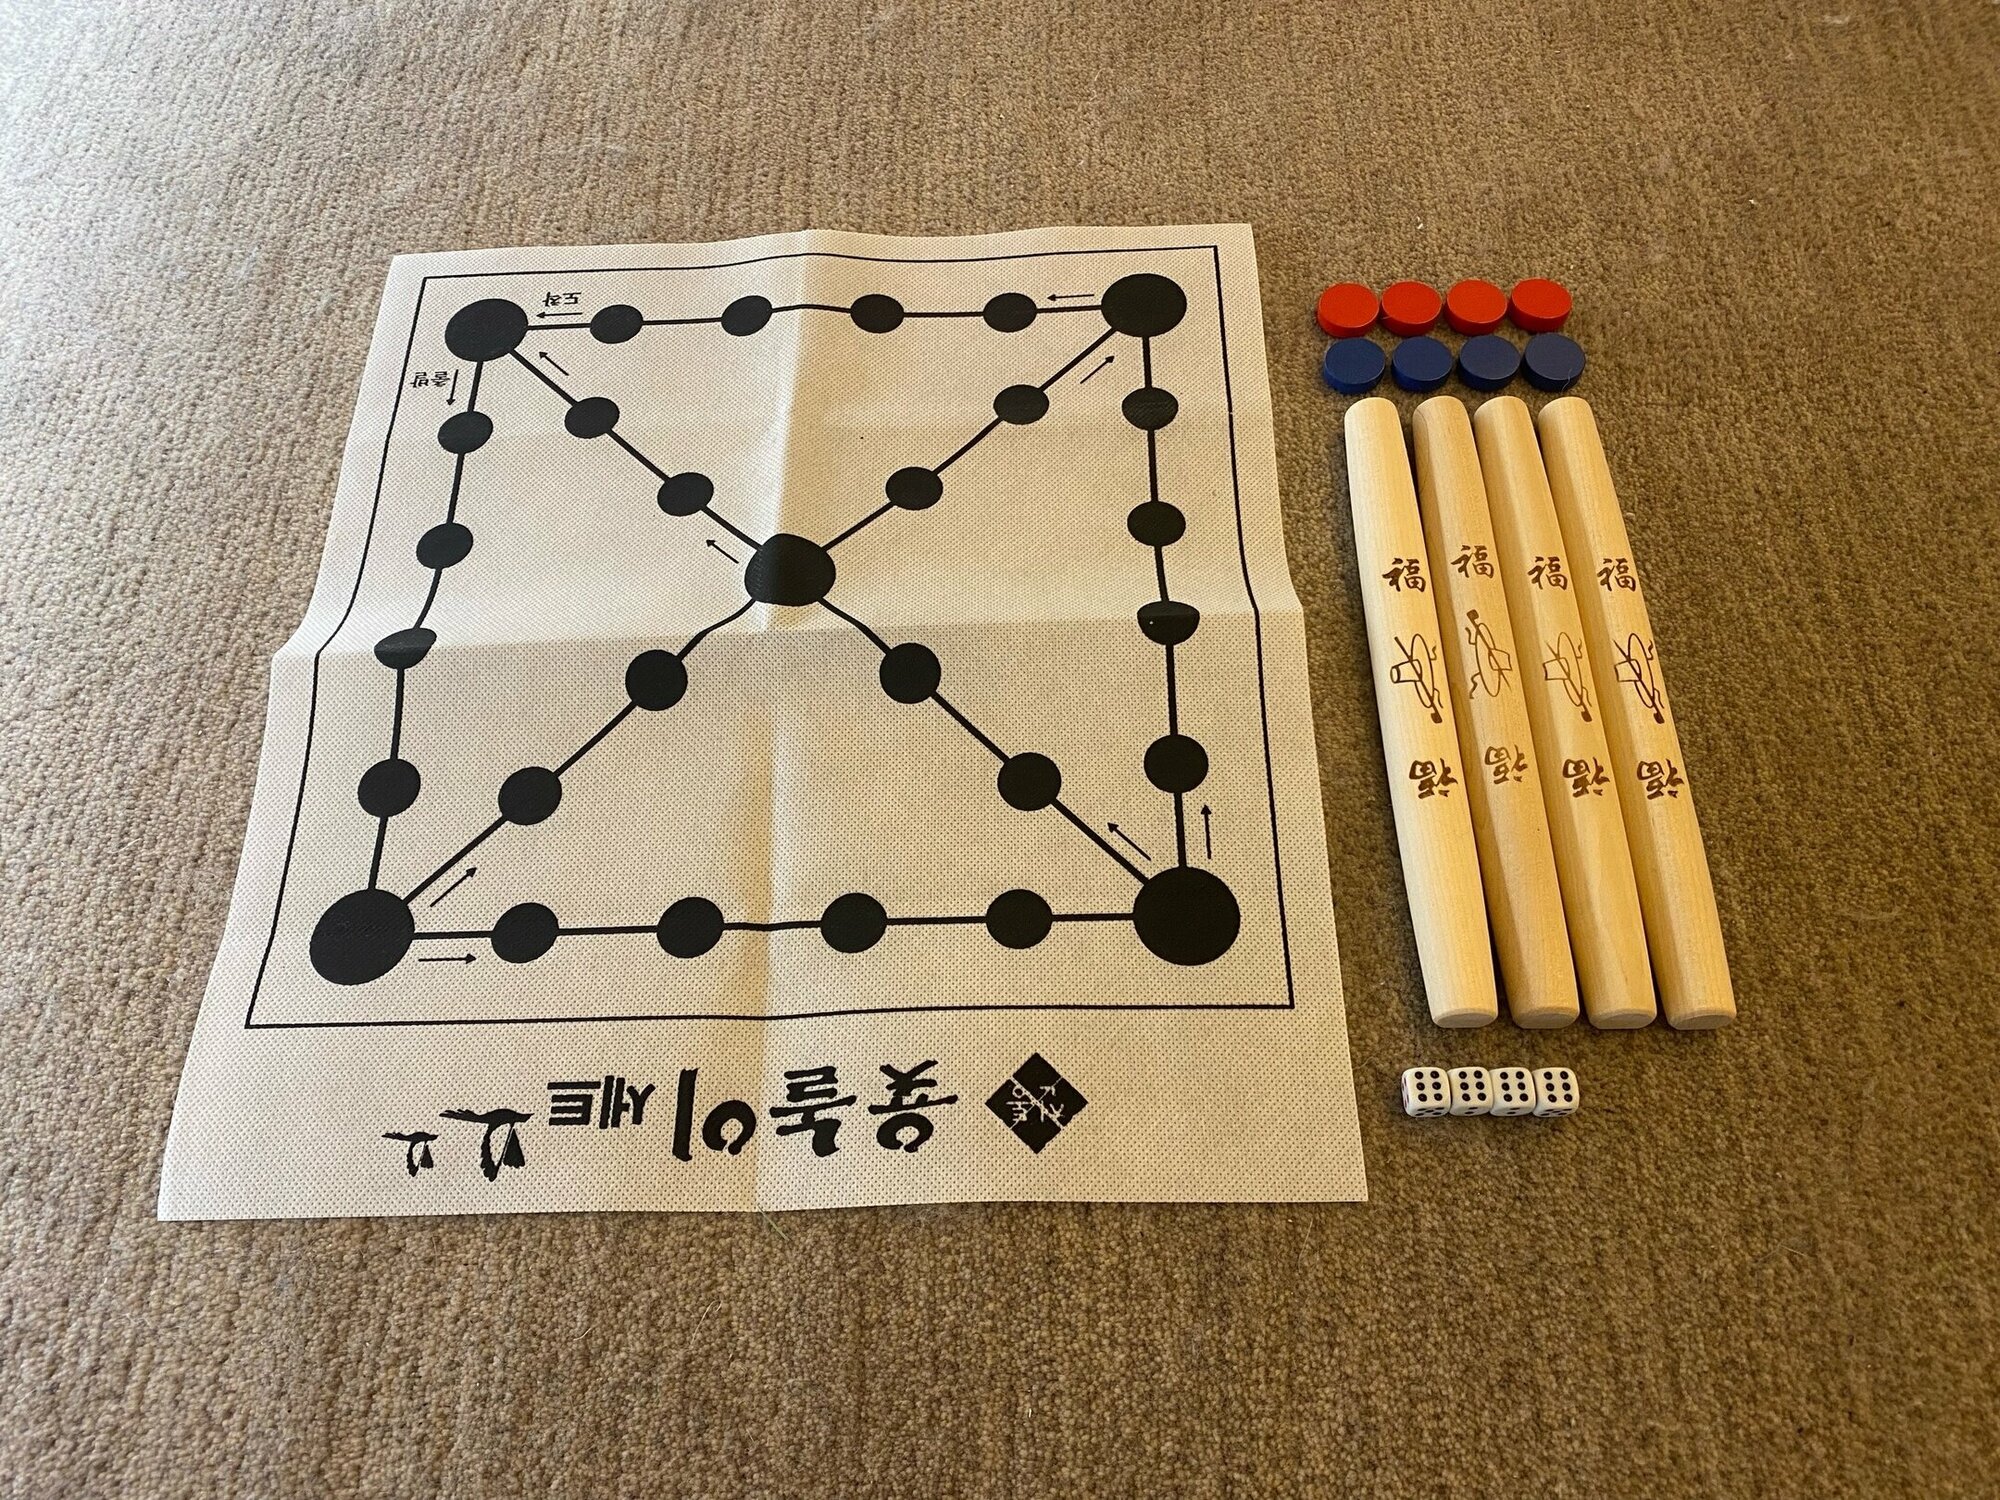 Настольная корейская игра " Ютнори ", поле, фишки, палочки и кубики.